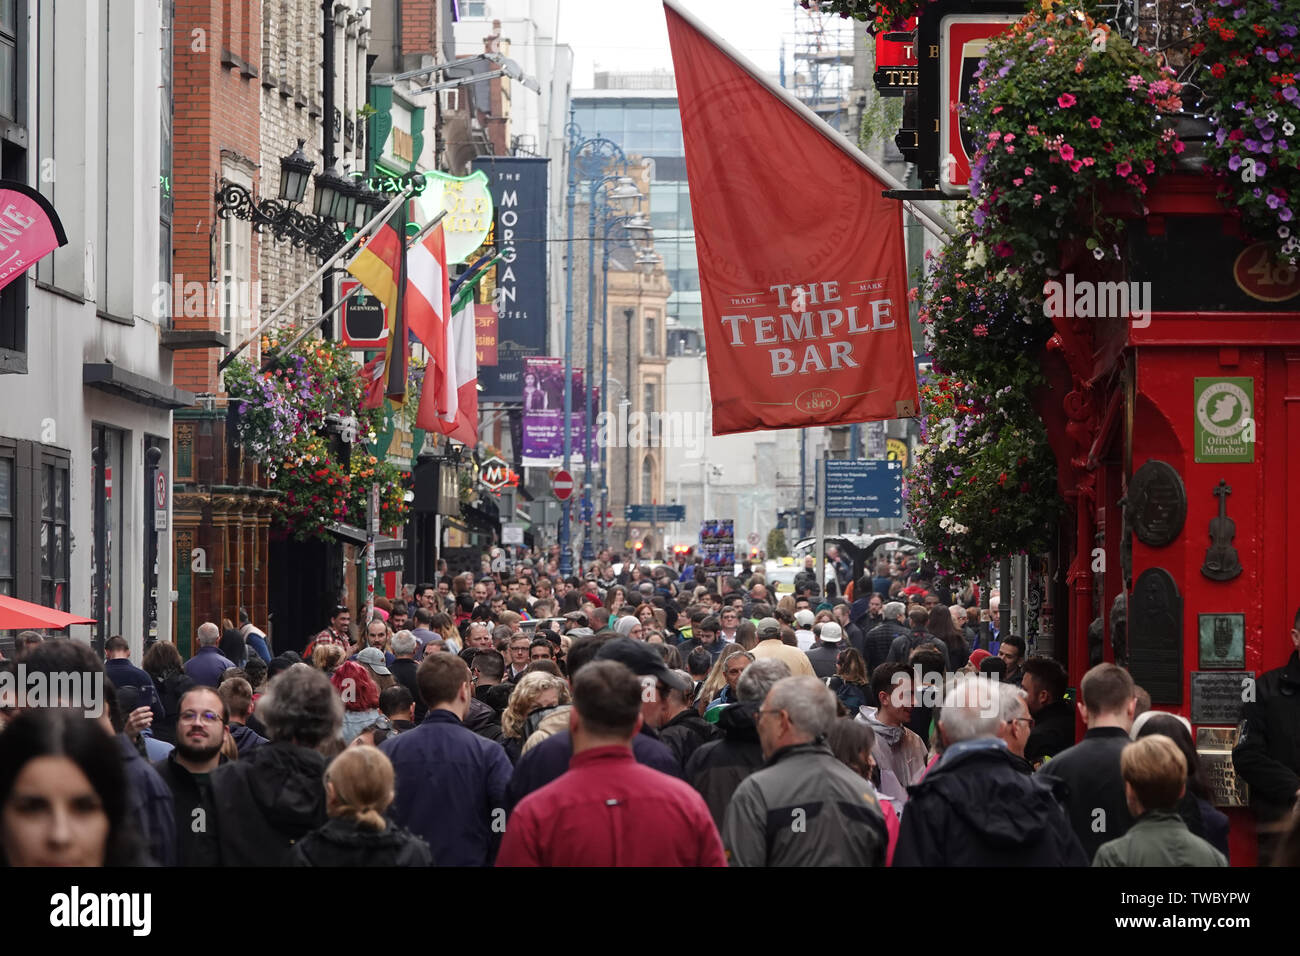 Dublin, Irland - 7 Juni, 2019: eine große Menge von Menschen ist durch die Hauptstraße des beliebten Viertel Temple Bar dargestellt. Stockfoto